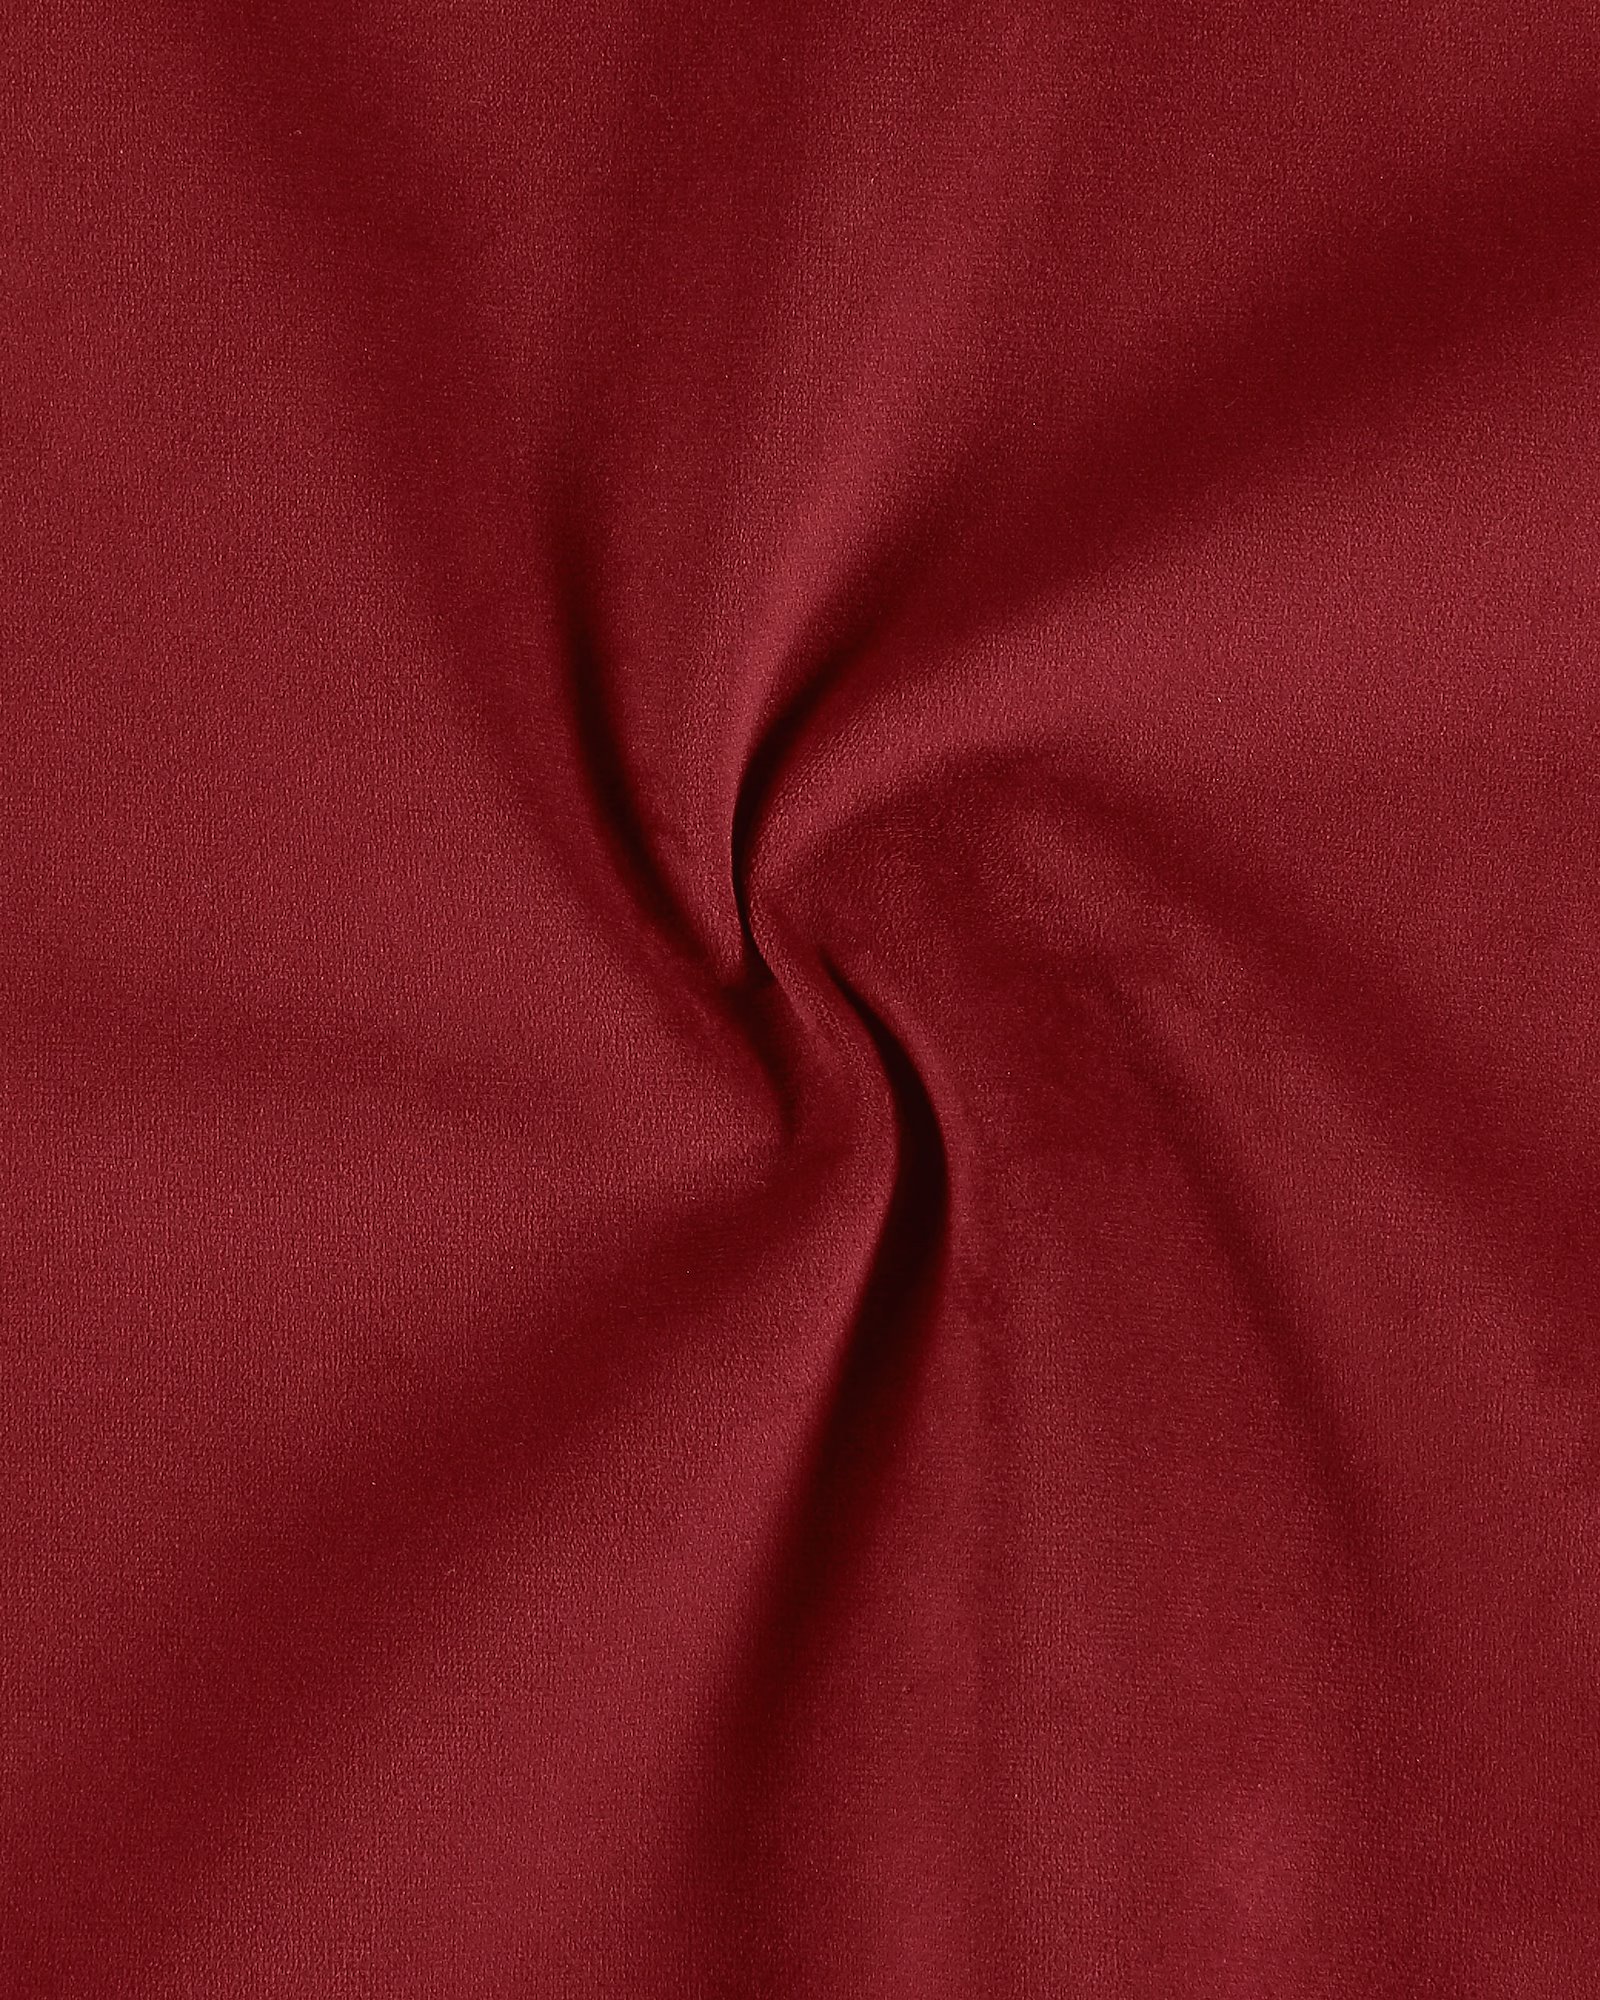 Upholstery velvet dark red 822295_pack